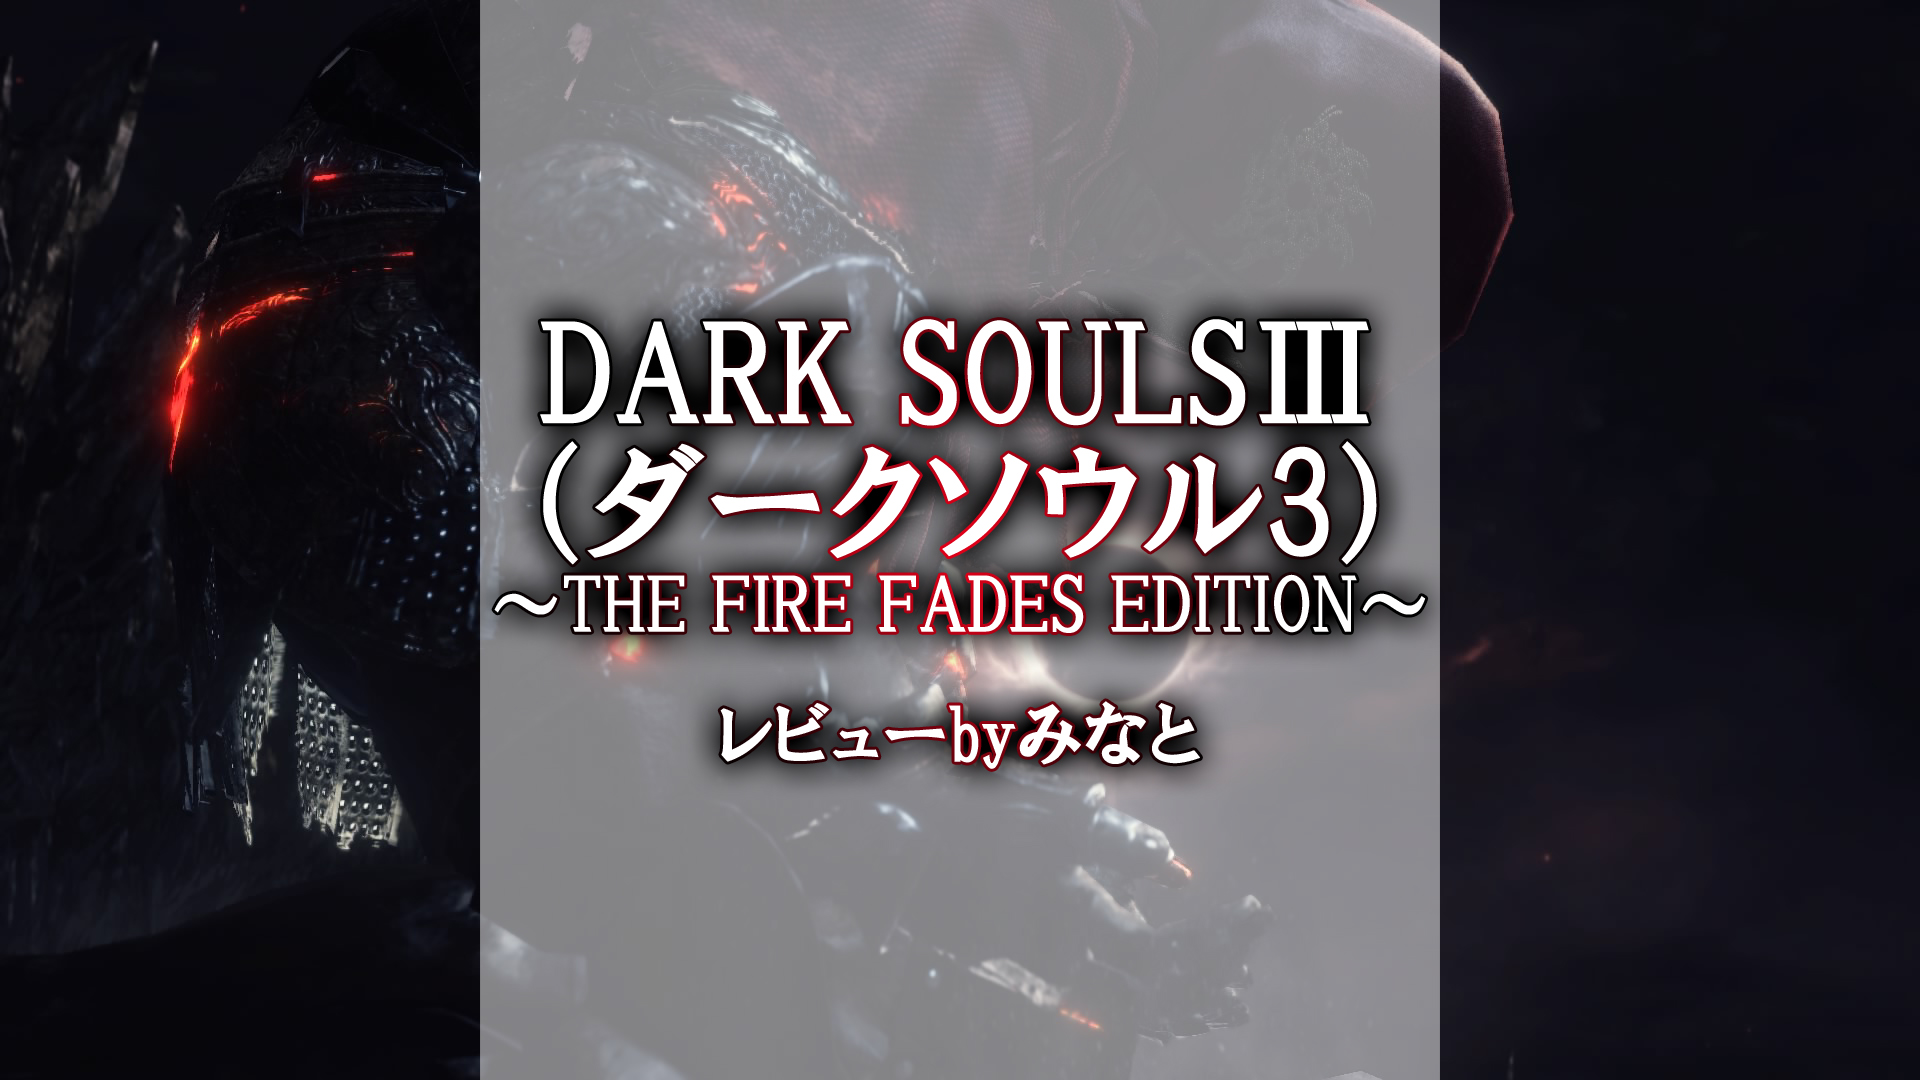 Dark Souls ダークソウル3 The Fire Fades Edition 感想 レビュー Byみなと ゲーマー夫婦 みなとも 夫婦で運営するゲームブログ